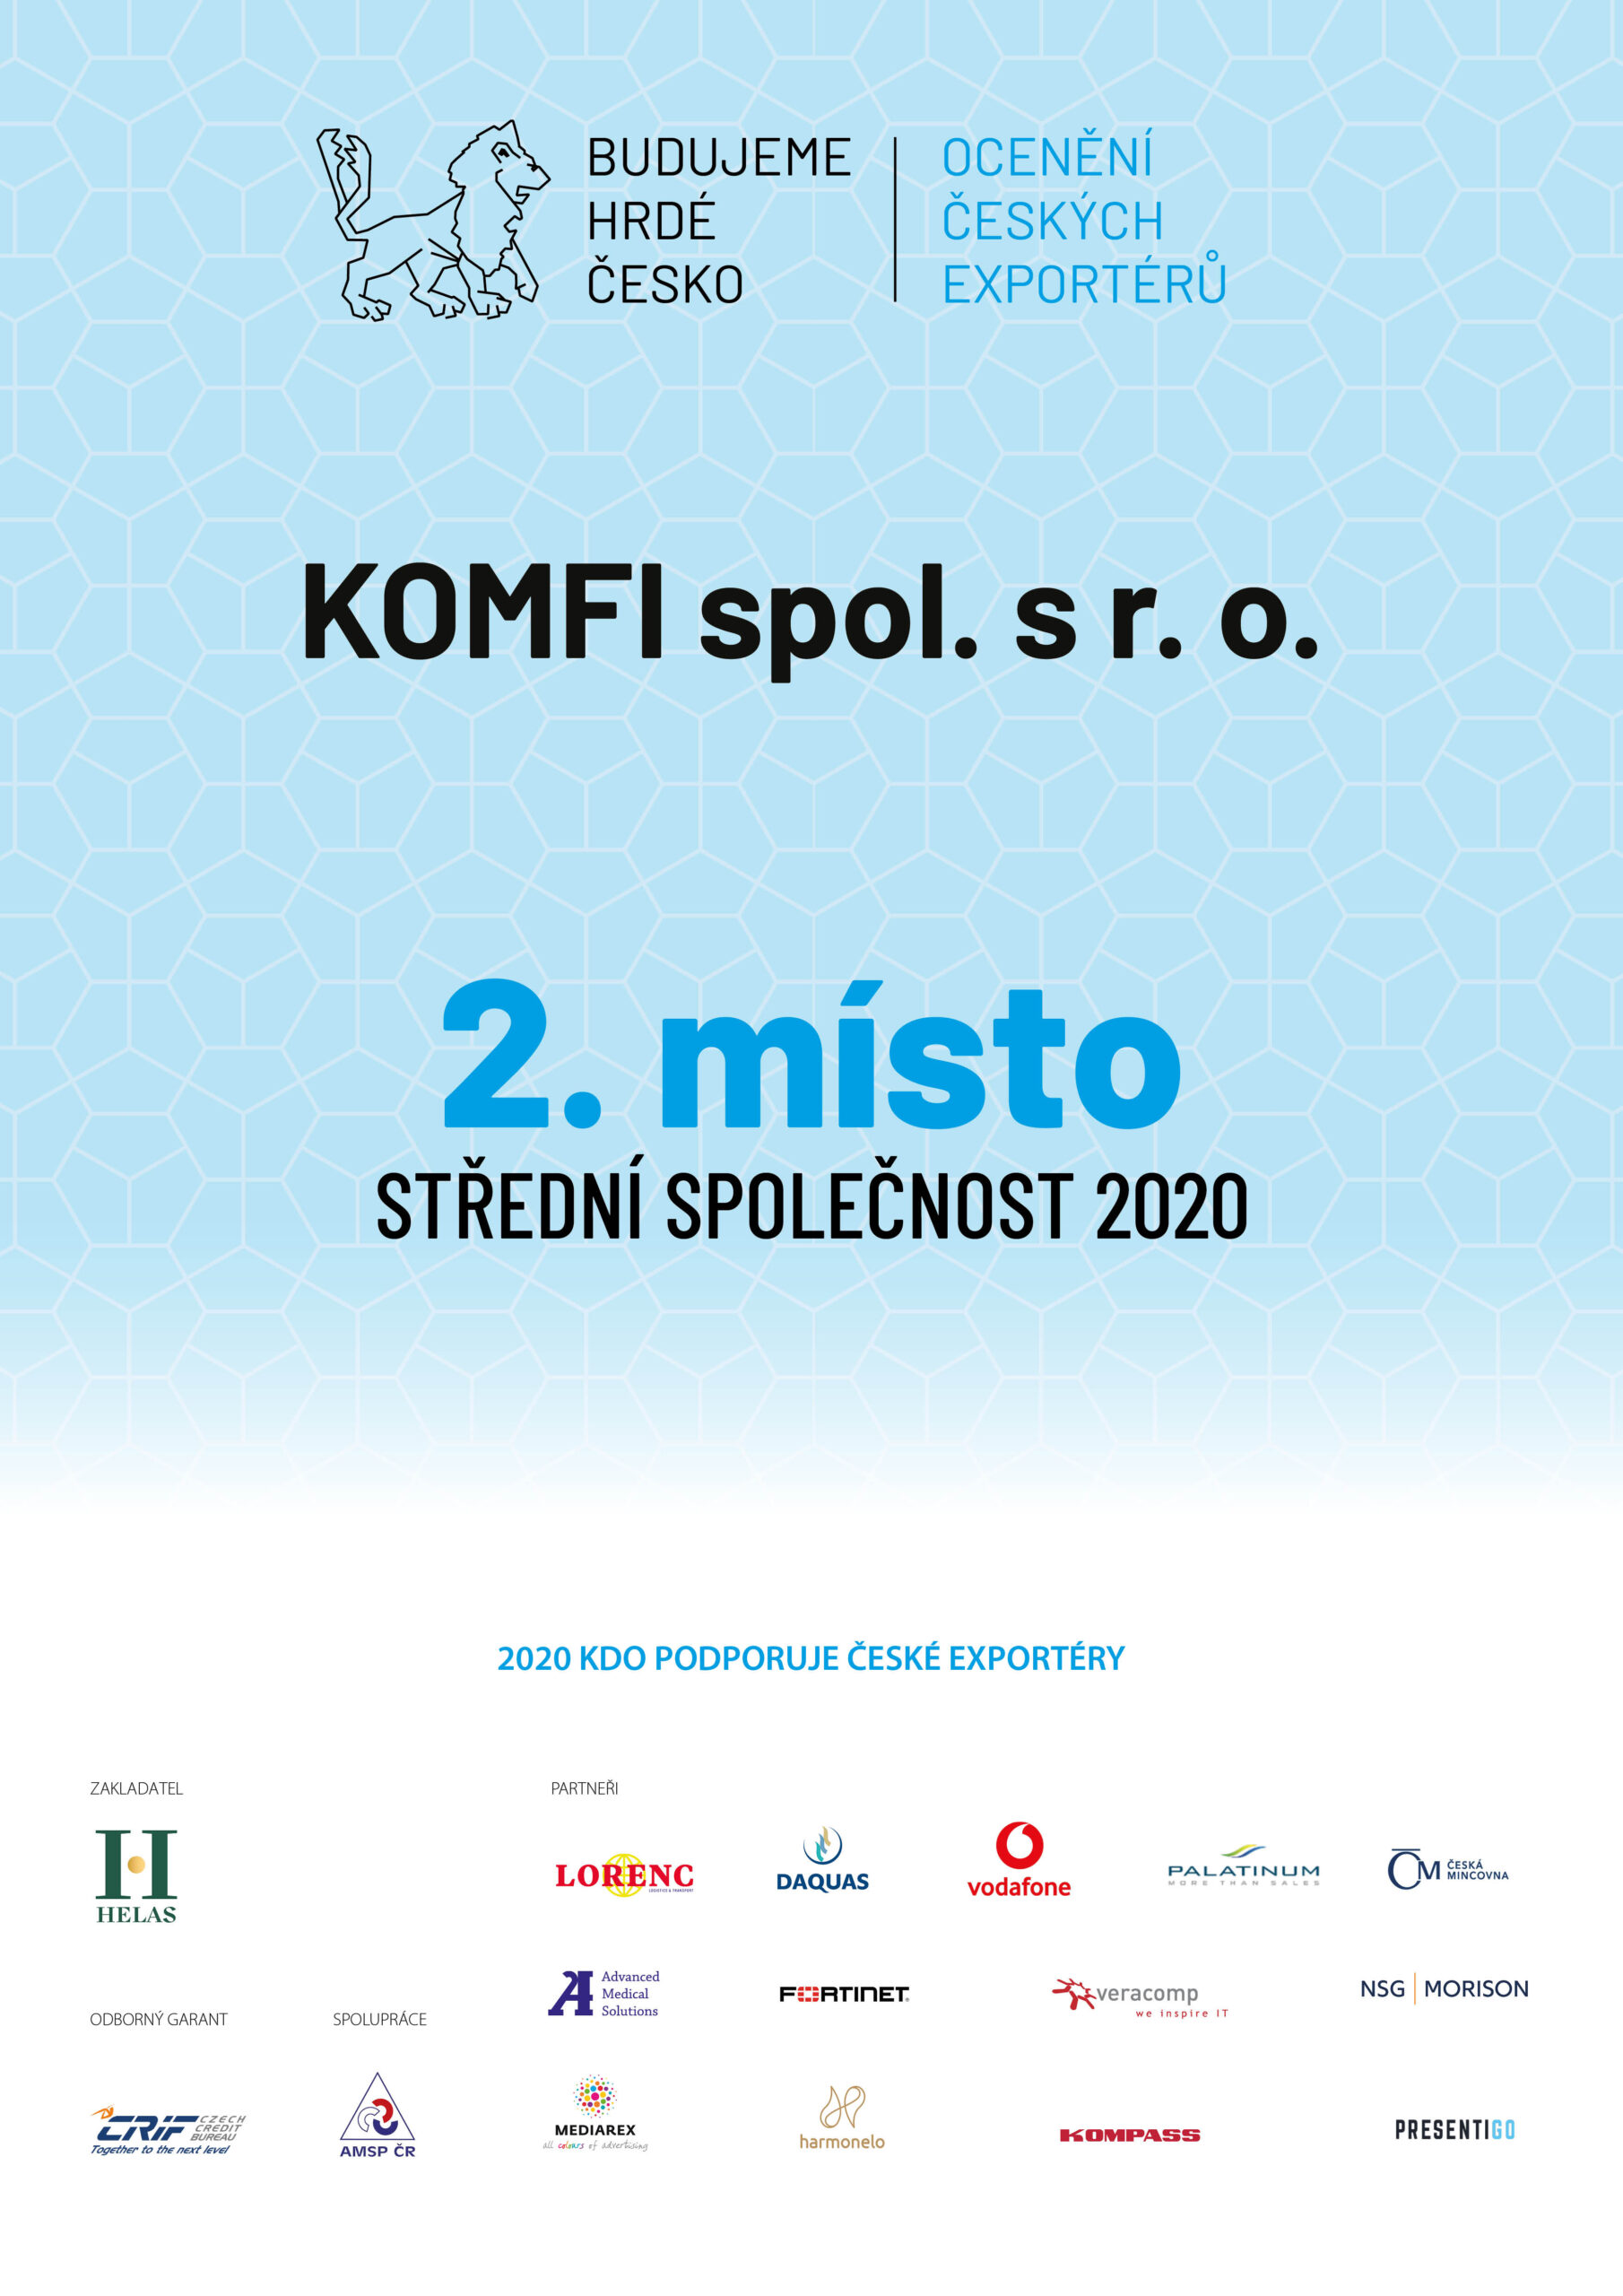 Komfi spol. s.r.o. 2 místo střední společnost 2020